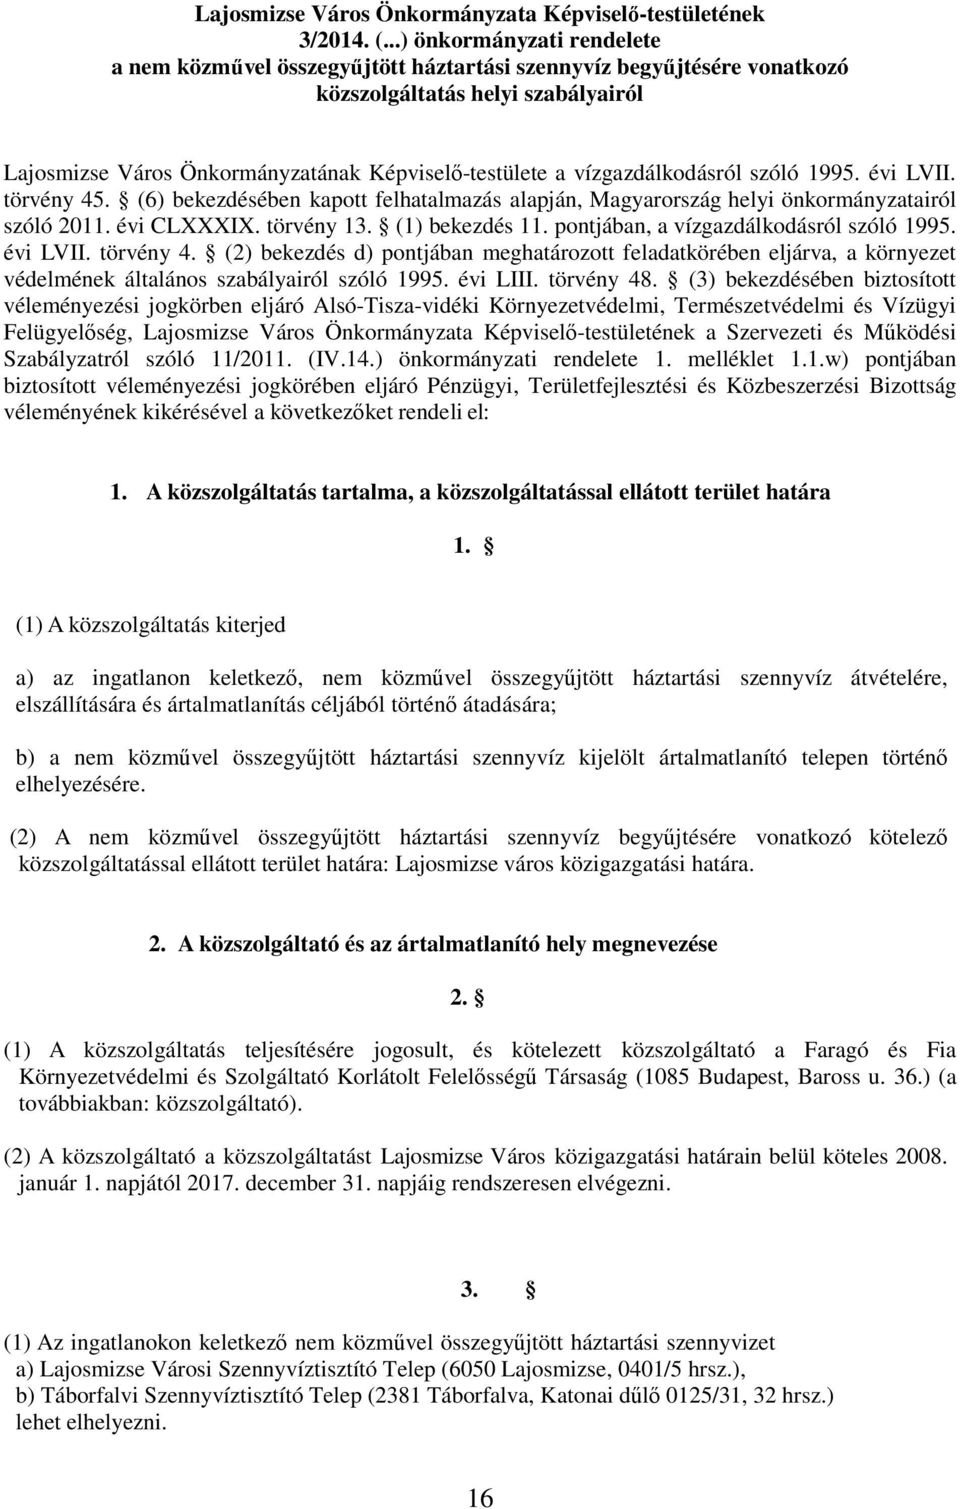 vízgazdálkodásról szóló 1995. évi LVII. törvény 45. (6) bekezdésében kapott felhatalmazás alapján, Magyarország helyi önkormányzatairól szóló 2011. évi CLXXXIX. törvény 13. (1) bekezdés 11.